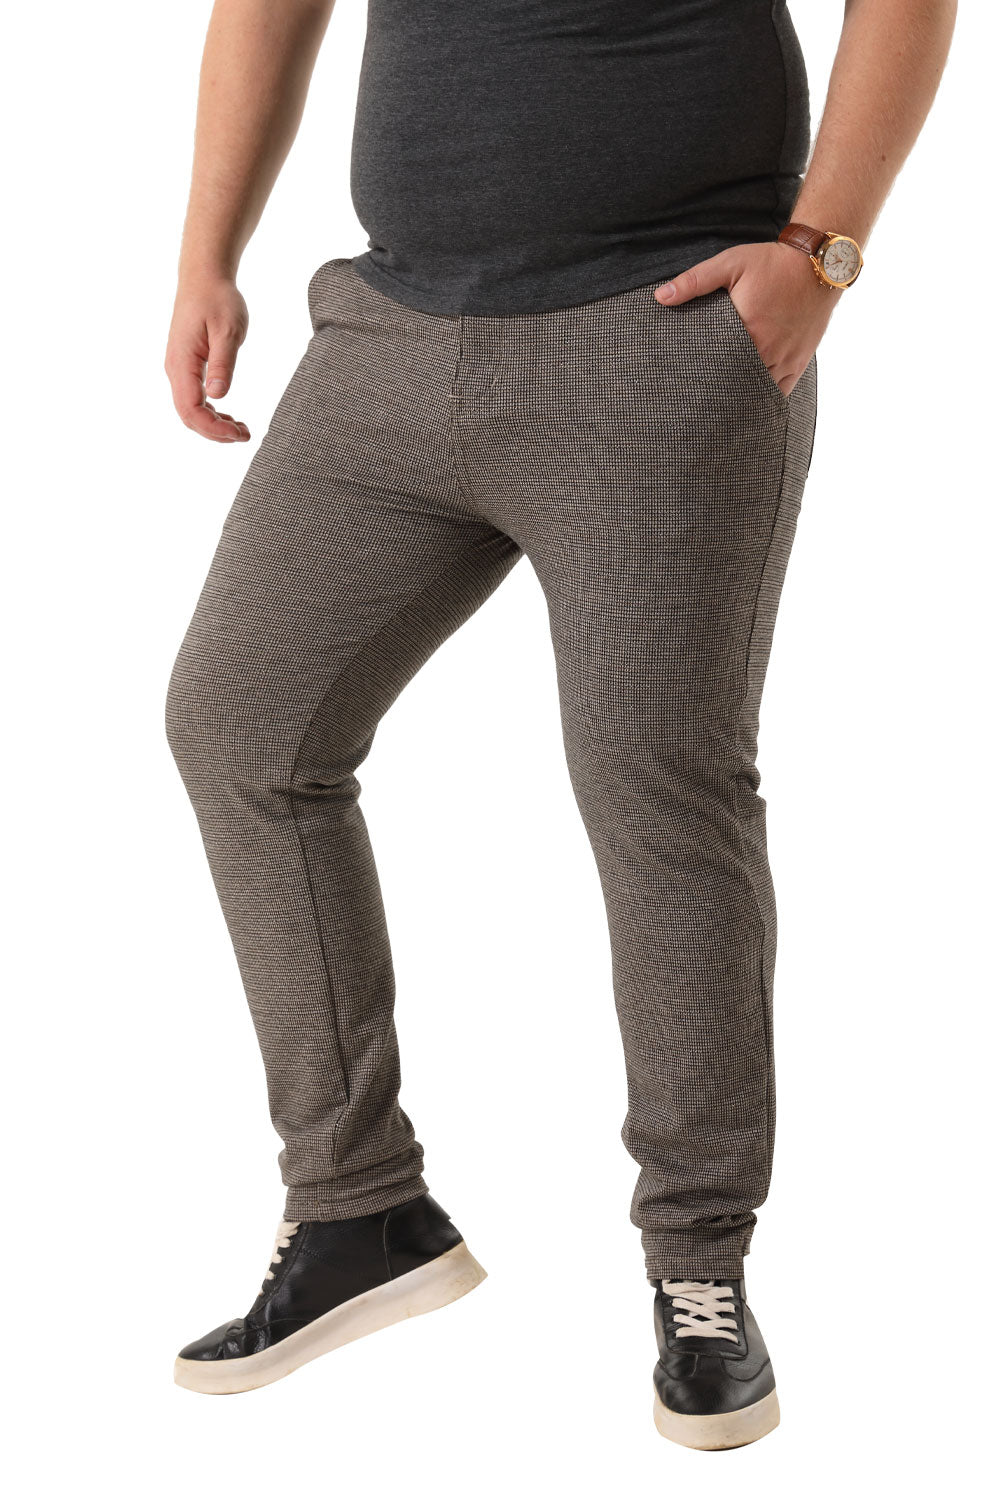 Men's spandex striped pants in gray(B&T)